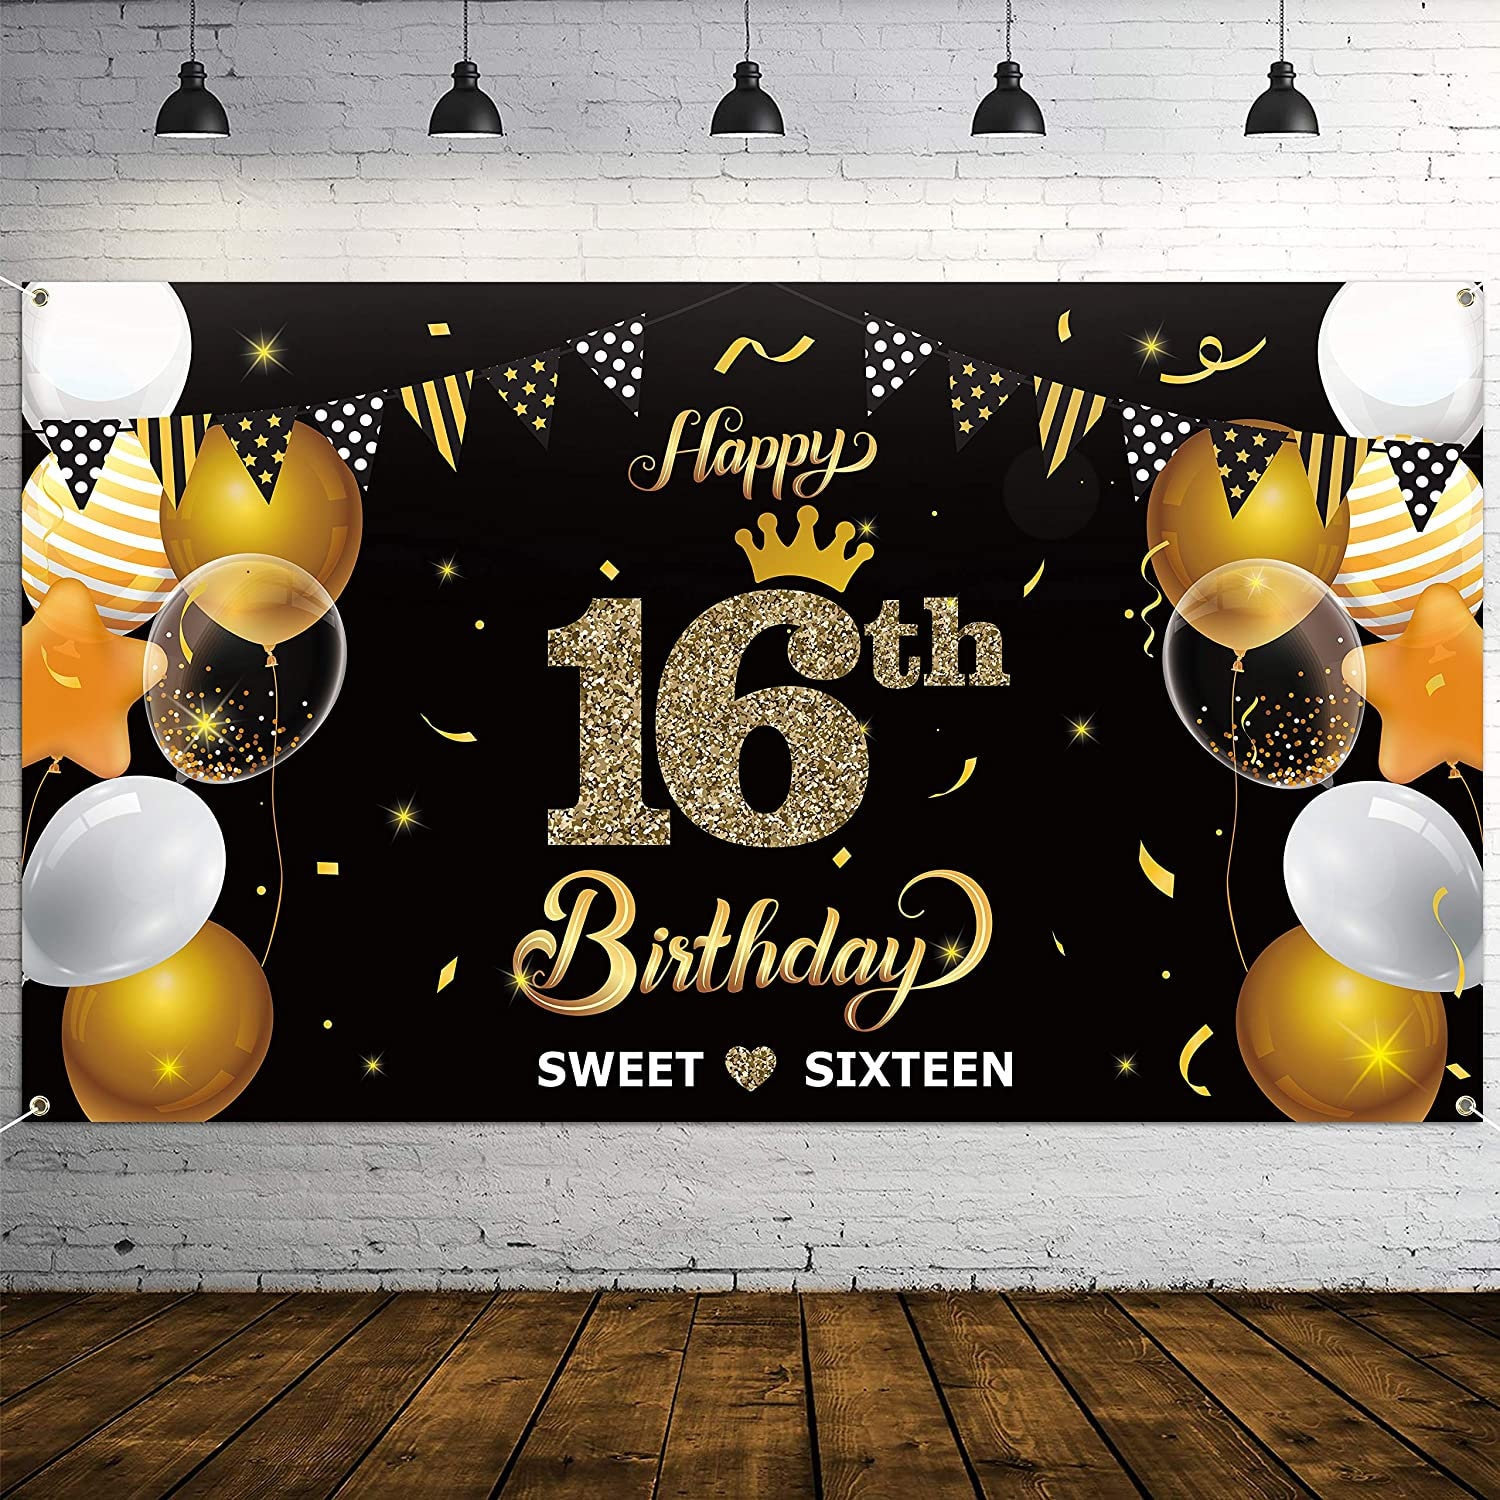 Với phông nền sinh nhật lần thứ 16 này, bữa tiệc sinh nhật của bạn sẽ trở nên đẹp hơn bao giờ hết. Phông nền với gam màu ấm áp và họa tiết độc đáo sẽ tạo nên không gian sinh nhật đầy vui vẻ, bất ngờ cho bạn và khách mời.